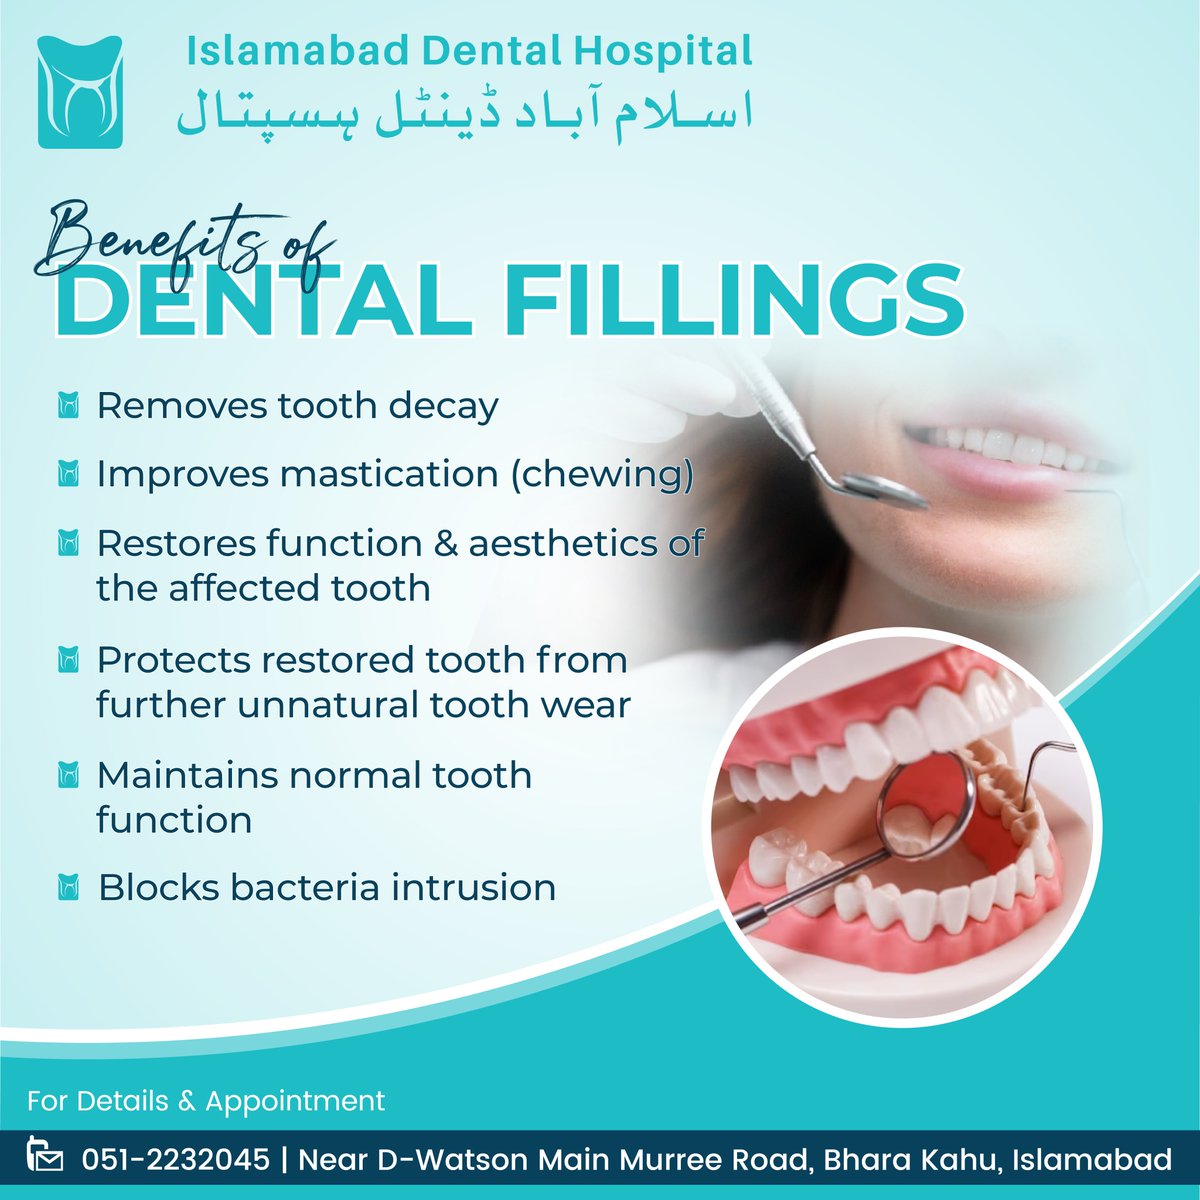 اپنے دانتوں کی صحت کو بہتر بنائیں! آج ہی اسلام آباد ڈینٹل ہسپتال تشریف لائیں اور ہمارے جدید ترین ڈینٹل فلنگز کے فوائد سے مستفید ہوں-

اپنے دانتوں کے تمام مسائل کے حل کے لیے اسلام آباد ڈینٹل ہسپتال سے رابطہ کریں۔
رابطہ نمبر: 2232045 51 92+
#DentalFillings #ToothDecay